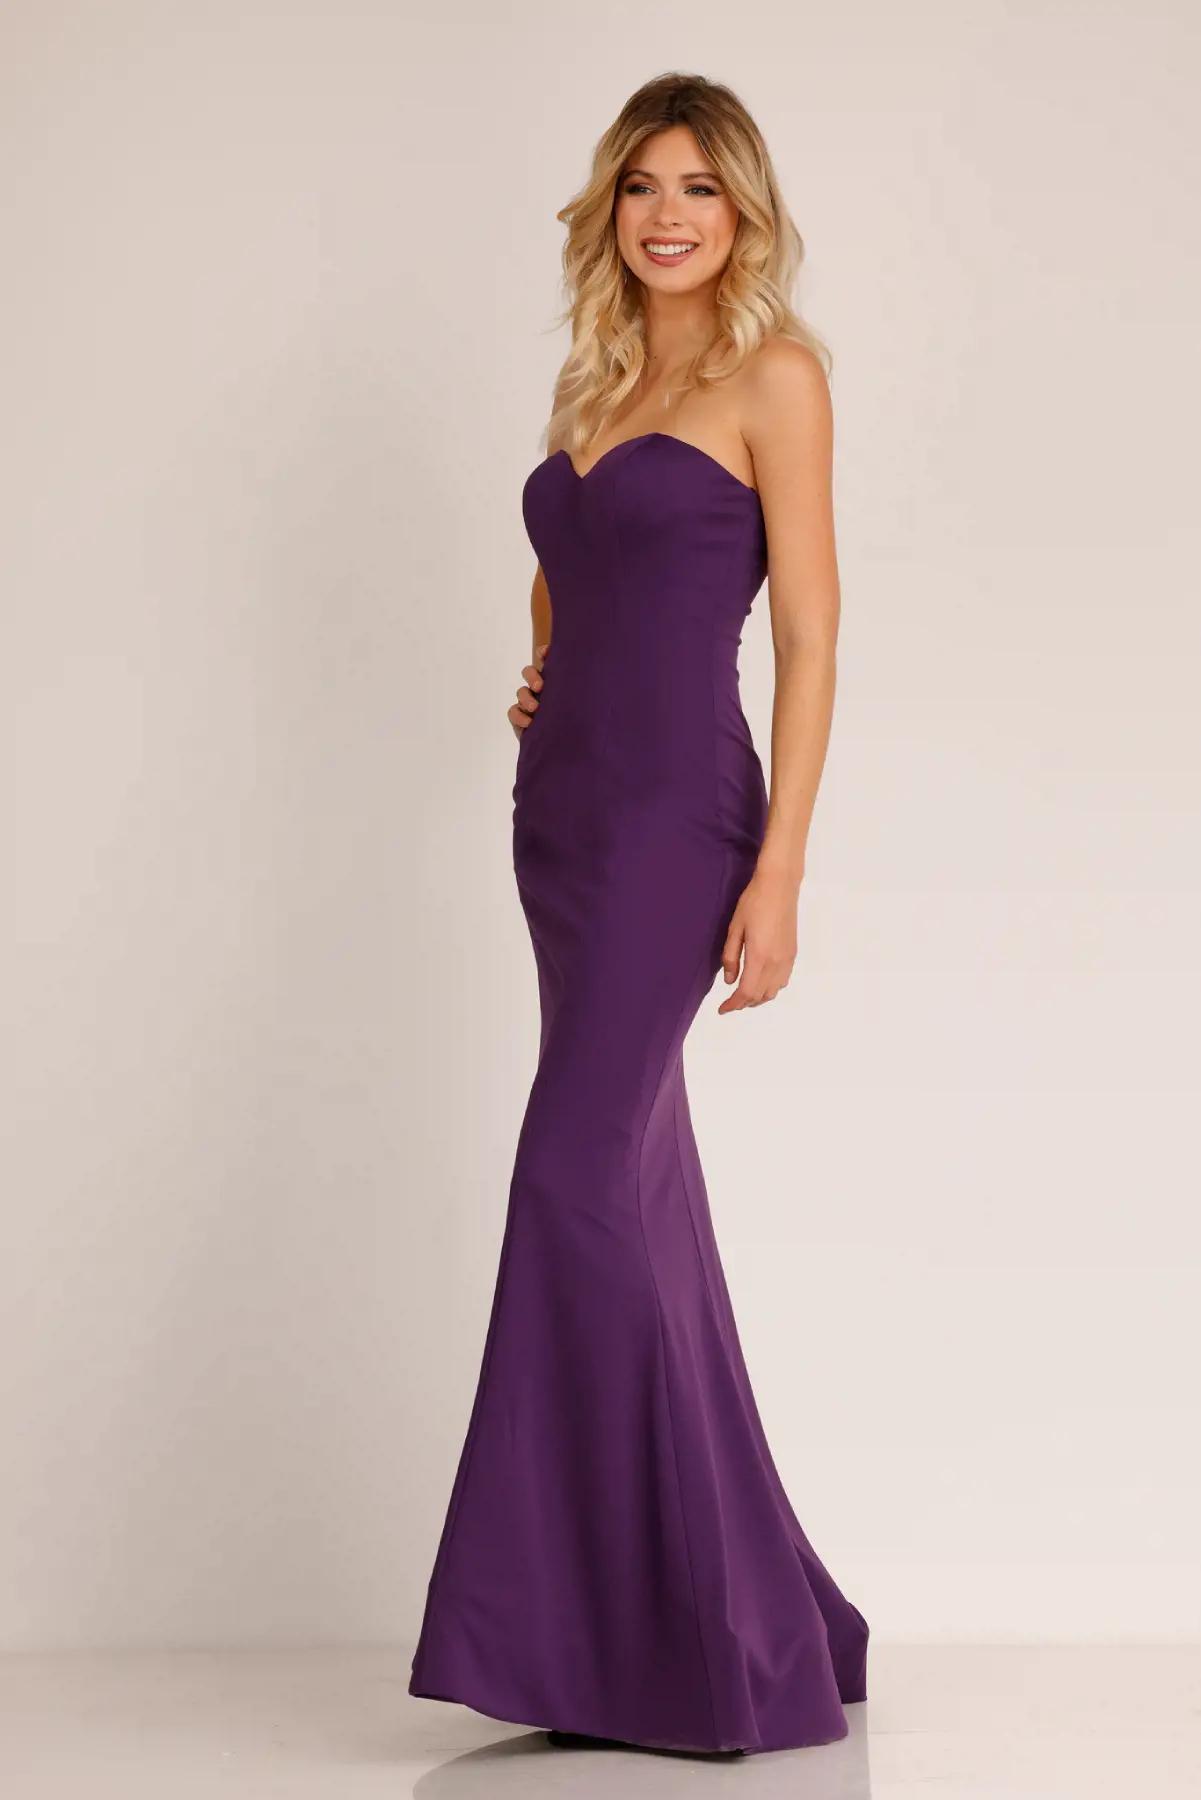 Model wearing an Abby Paris FW purple gown